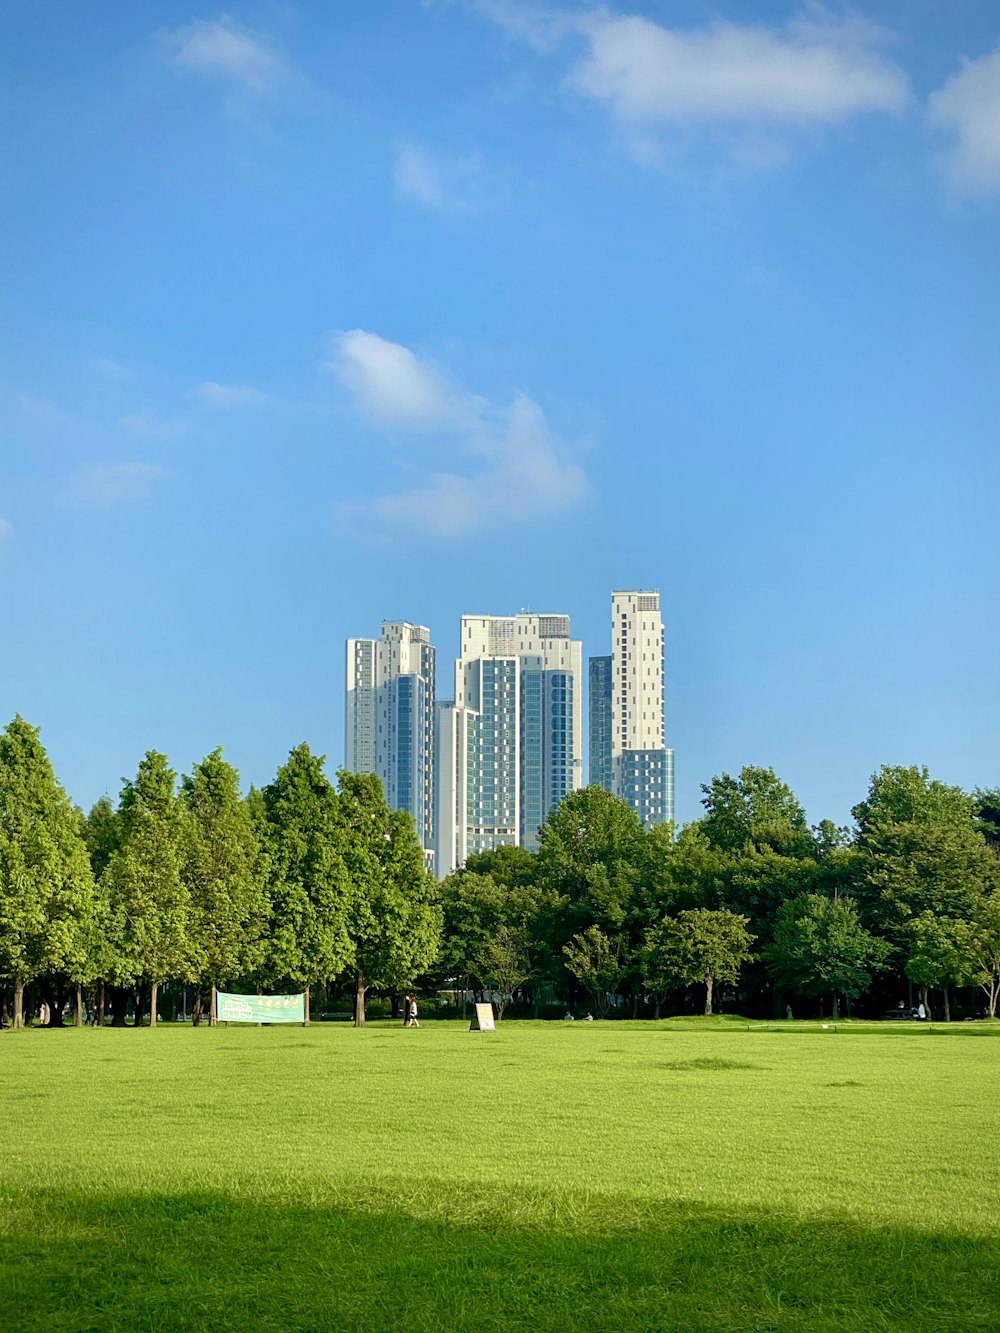 멀리 나무와 고층 건물이 있는 푸른 잔디밭